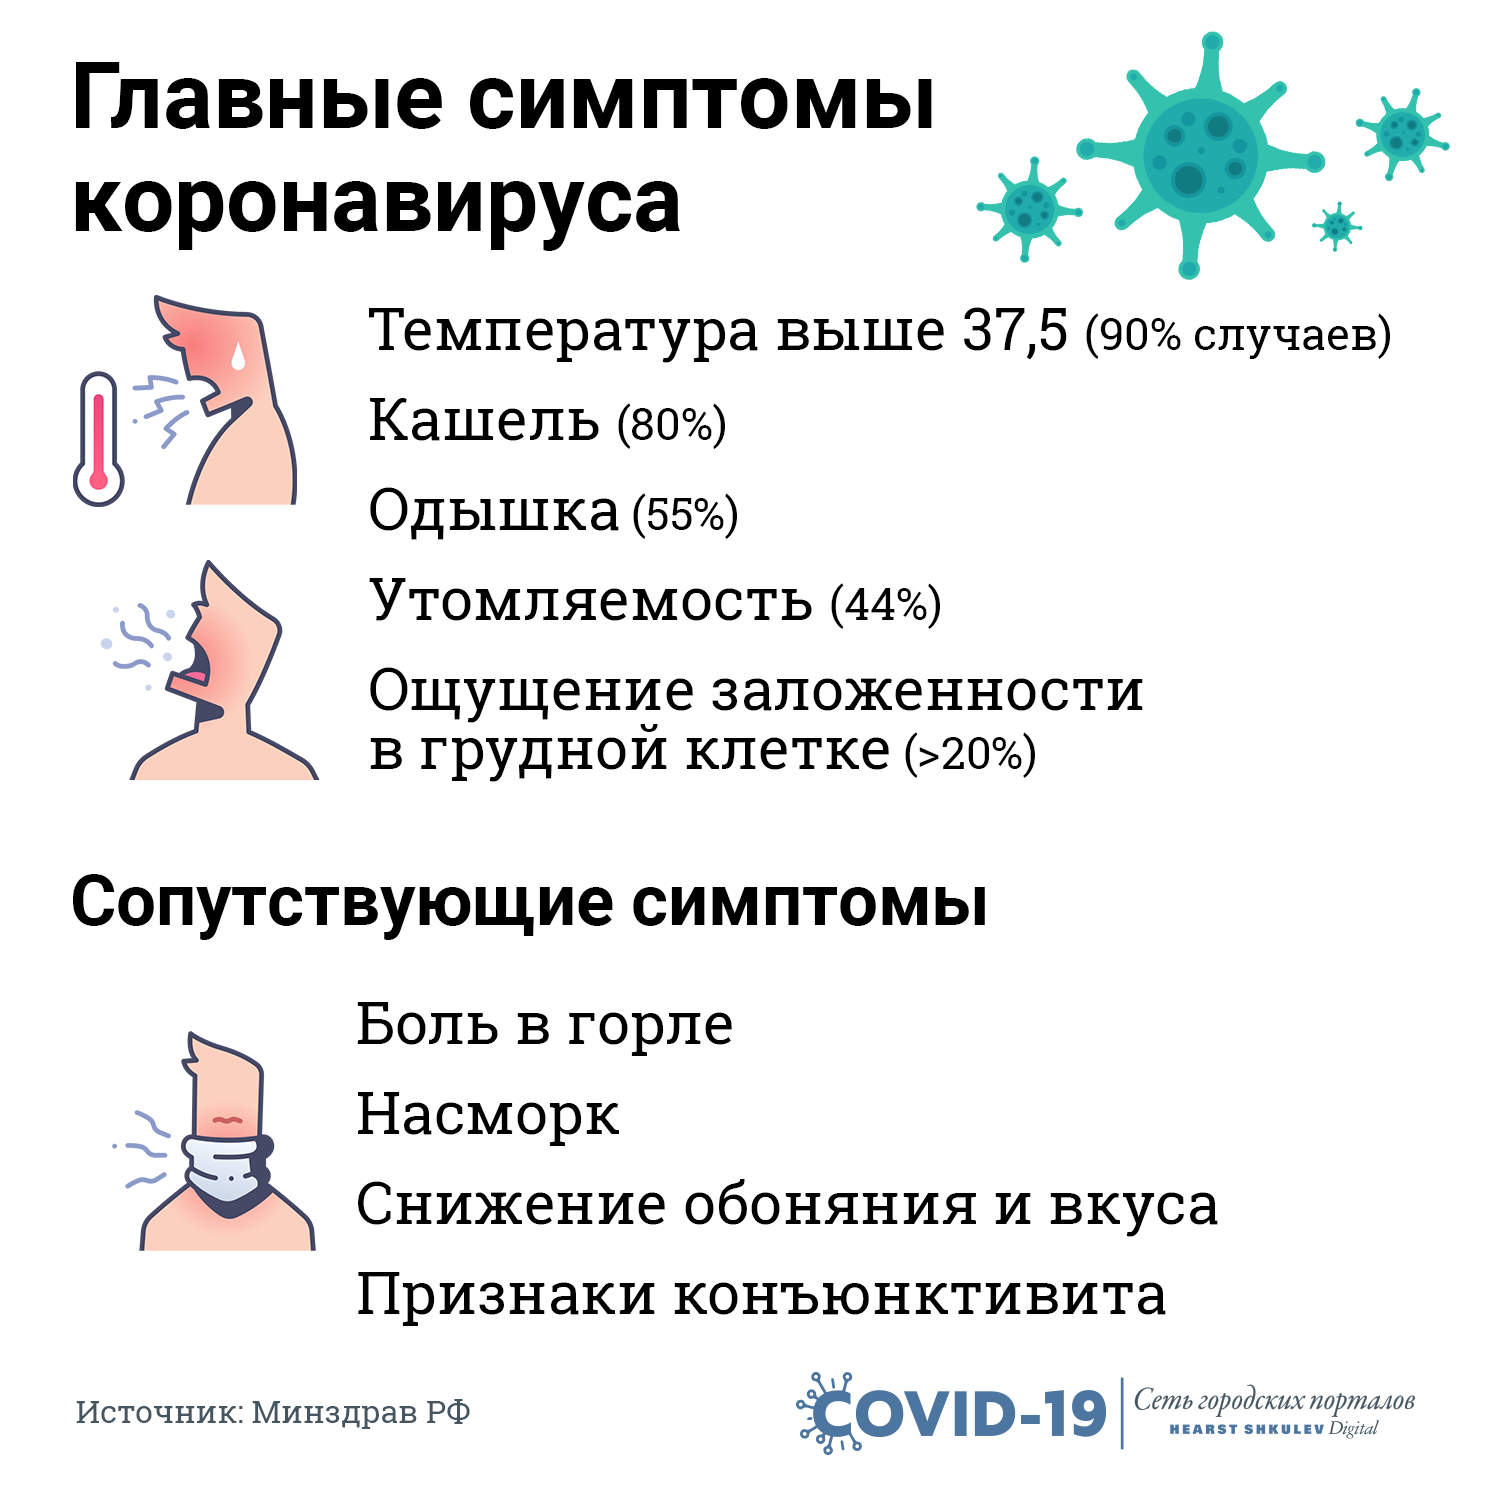 Сильный ли кашель при коронавирусе?